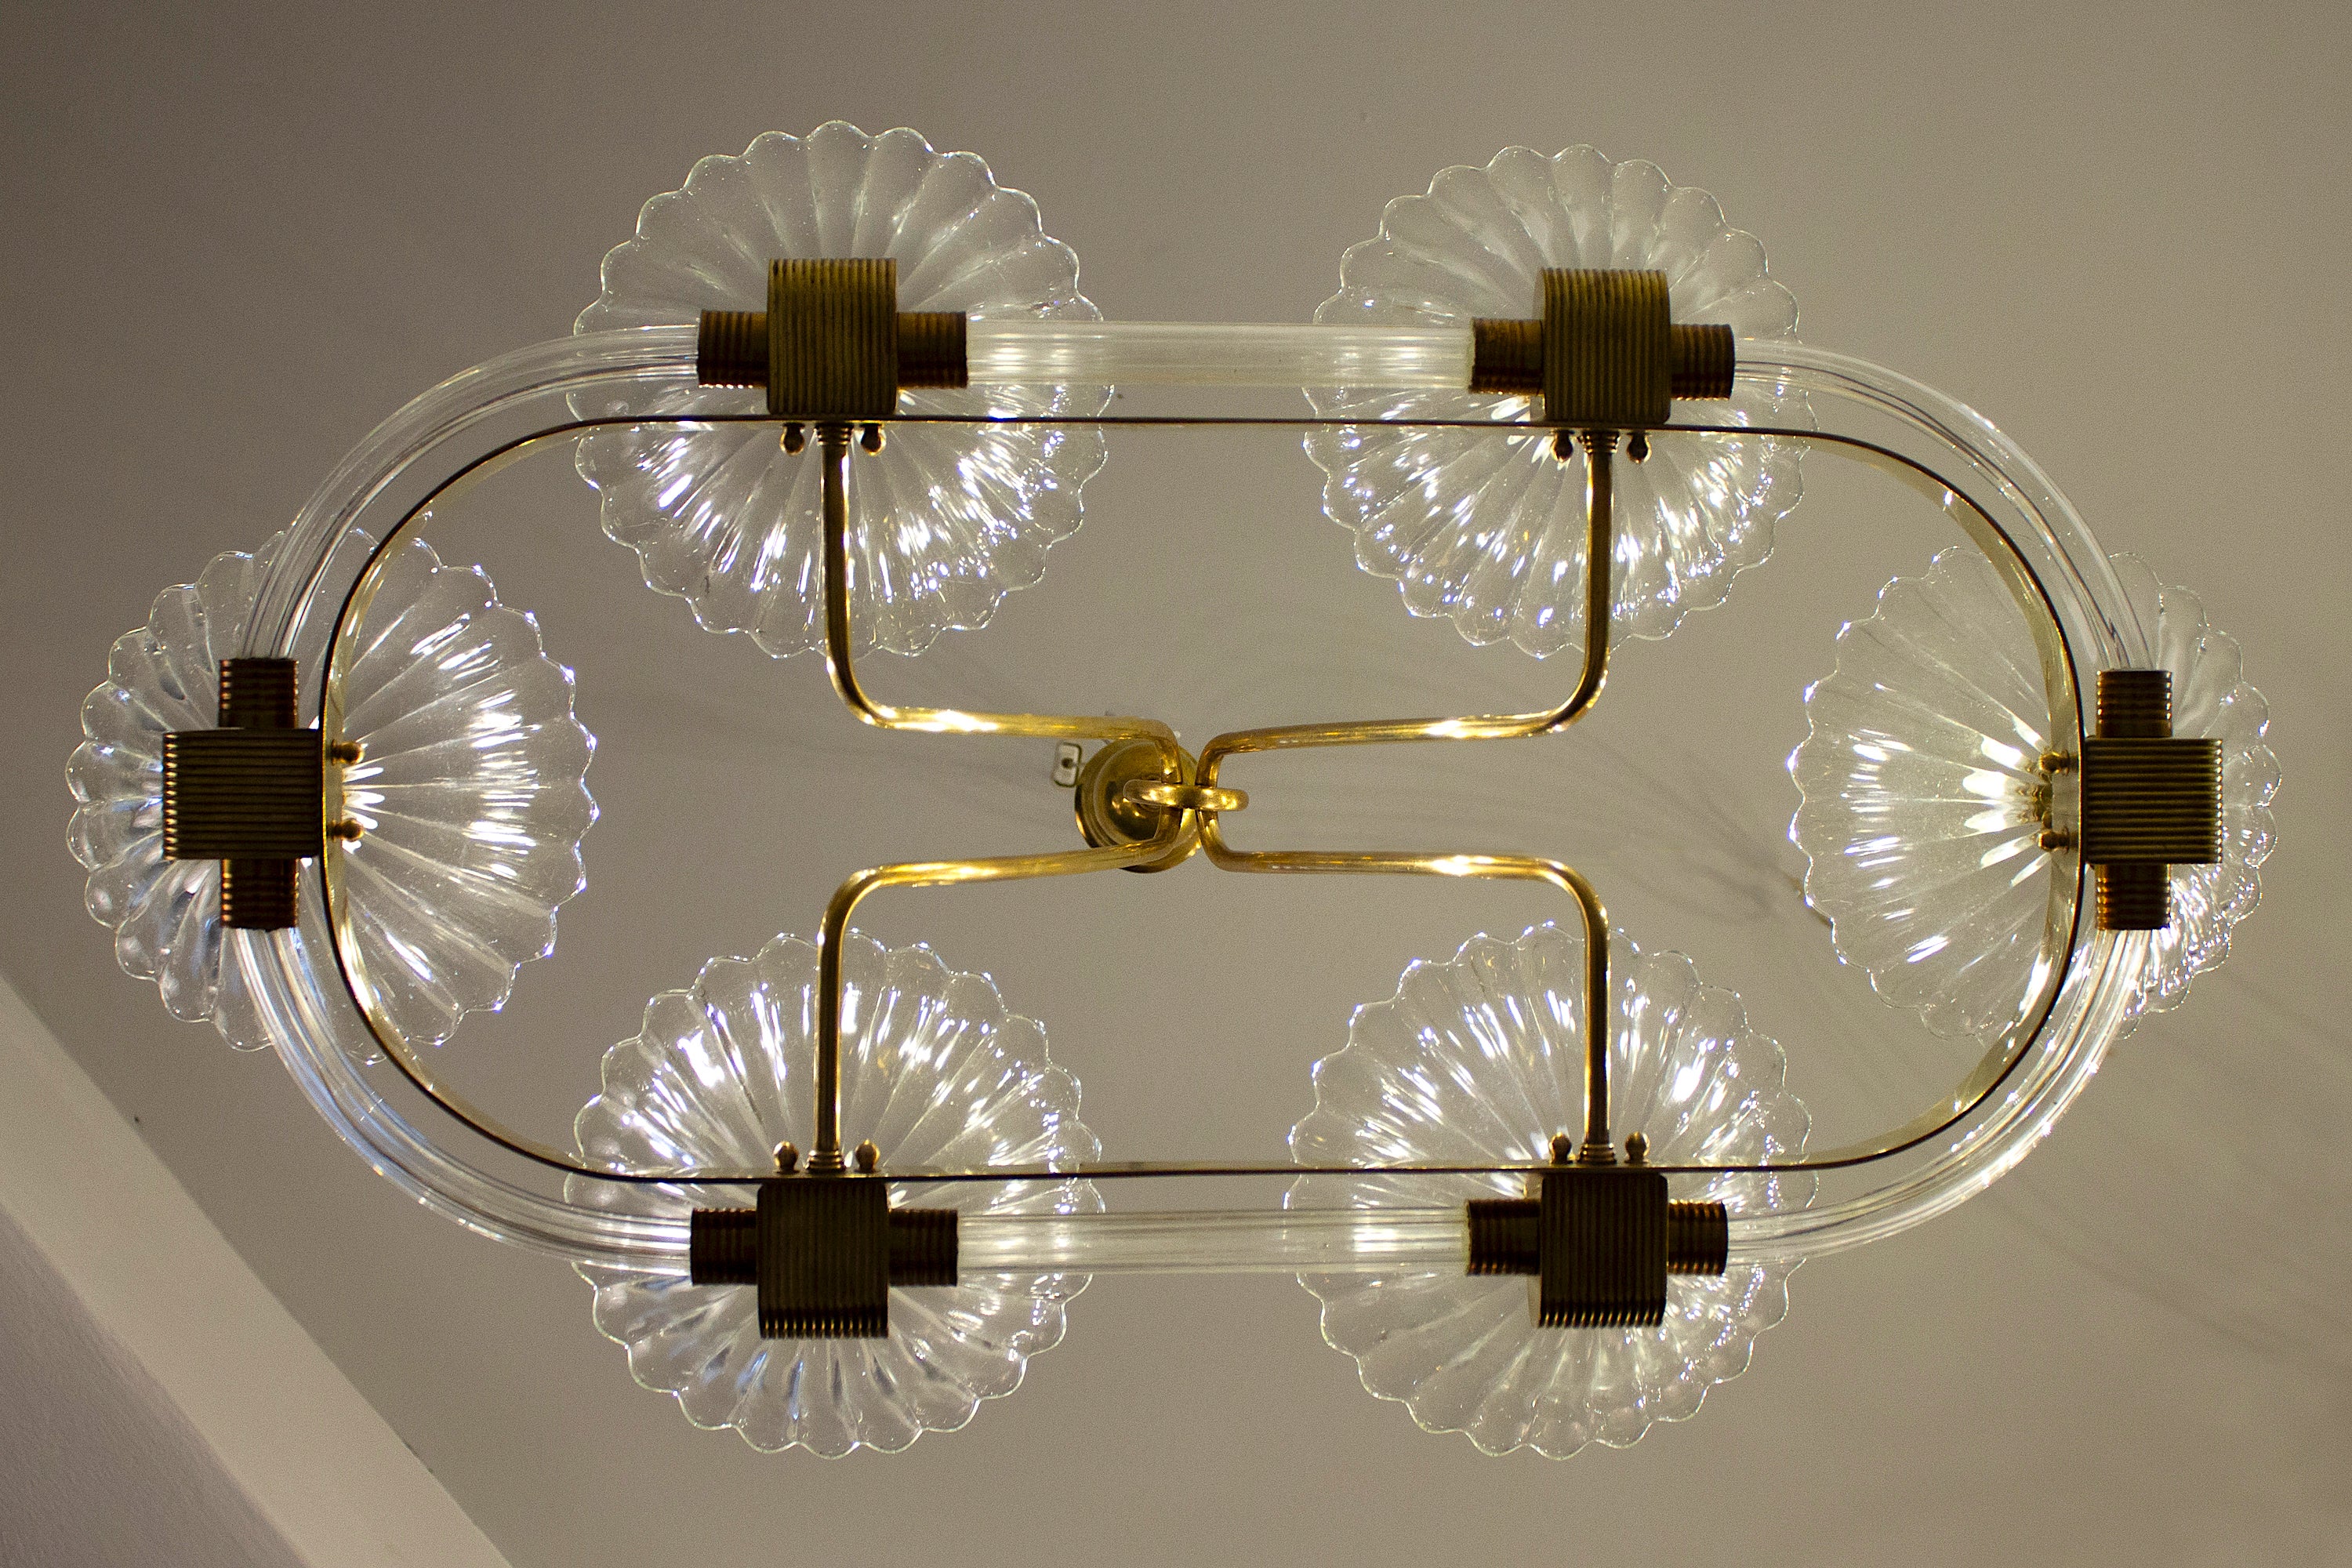 Außergewöhnlicher Kronleuchter aus Murano-Glas mit sechs Schirmen und eleganter Messingfassung von Ercole Barovier.
Ausgezeichneter Vintage-Zustand
Sechs E 27-Glühbirnen, die mit den US-Normen kompatibel sind.
 Die Höhe der Messingstange kann auf